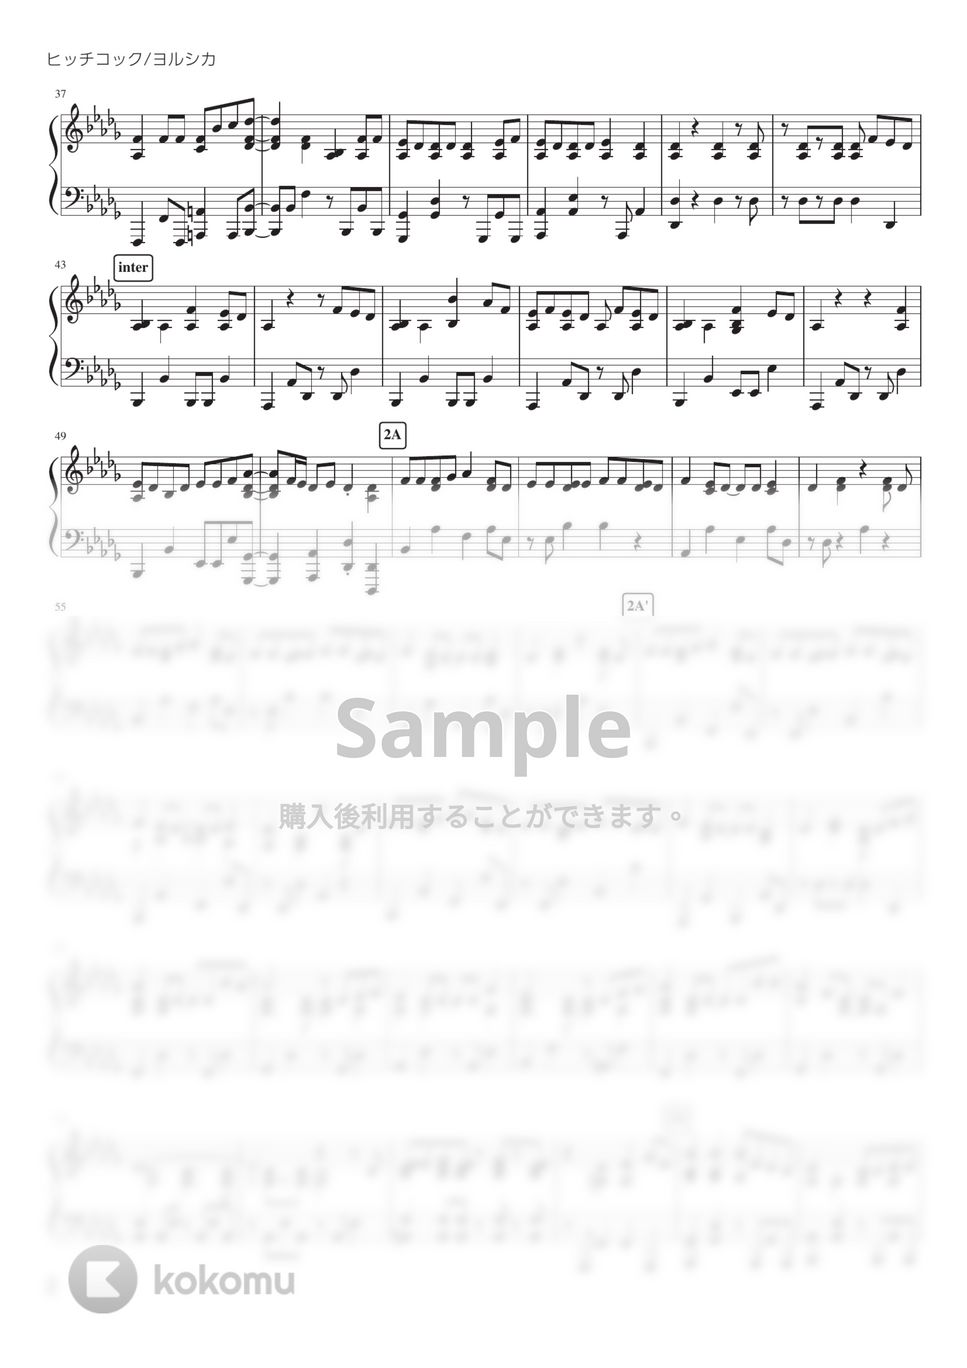 ヨルシカ - ヒッチコック (PianoSolo) by 深根 / Fukane